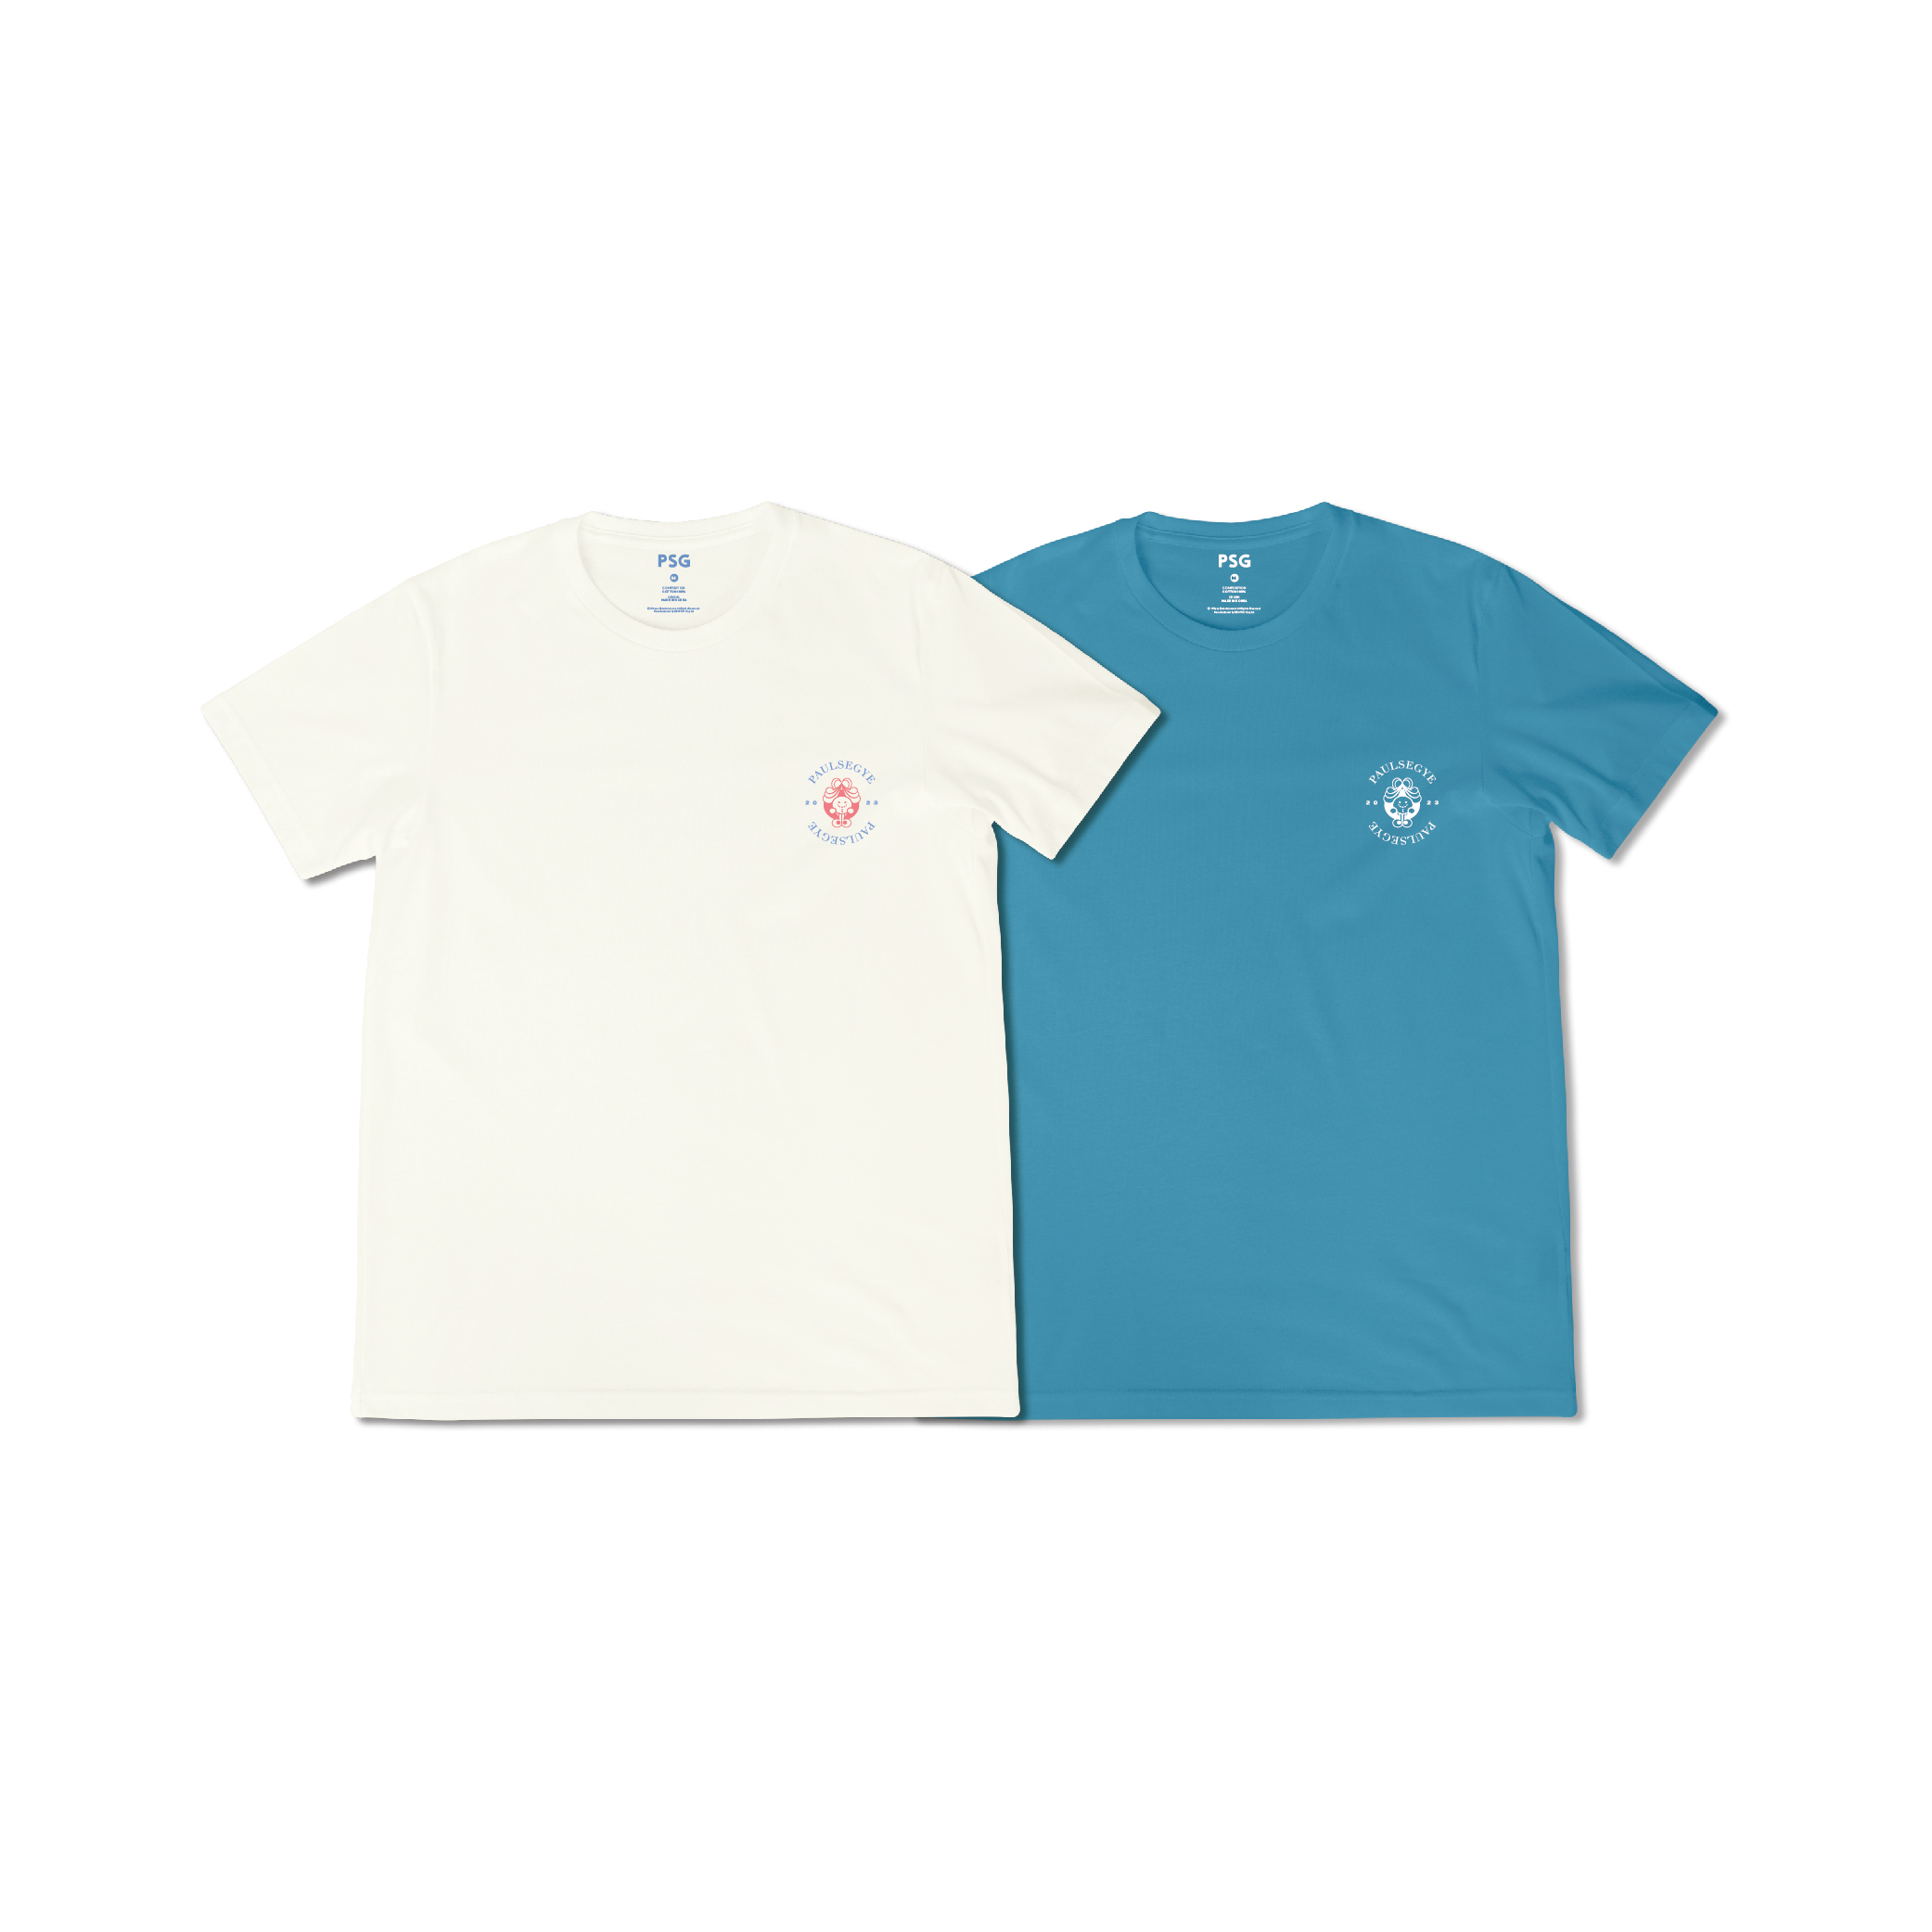 폴킴(Paul Kim) - 폴세계 티셔츠(PAULSEGYE T-SHIRTS)케이팝스토어(kpop store)